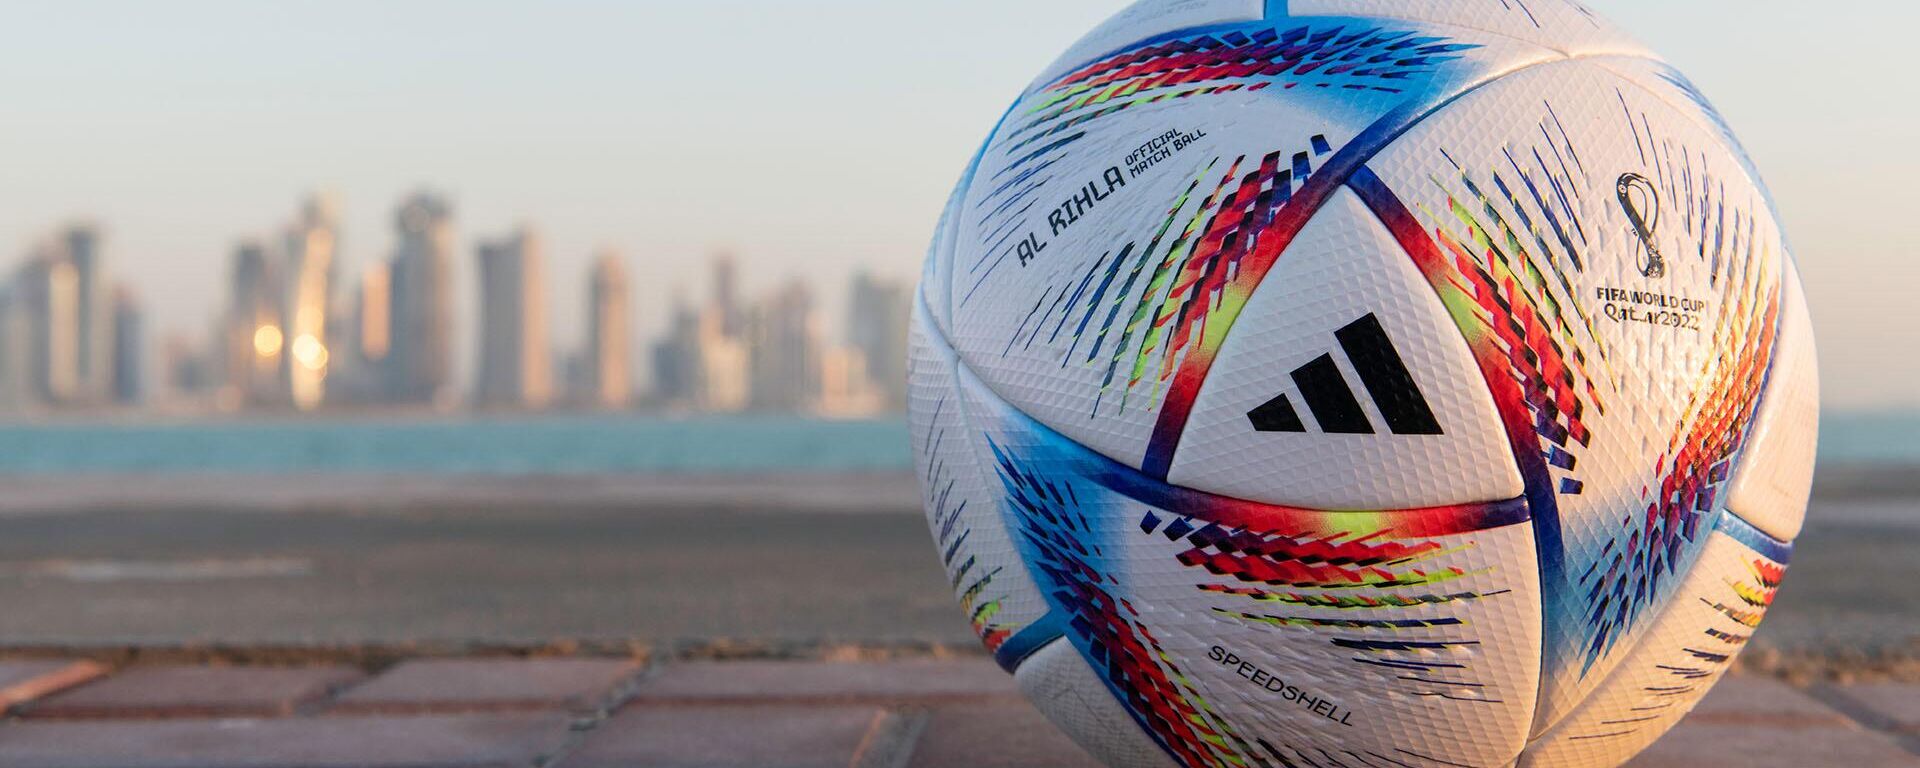  La empresa Adidas presentó a 'Al Rihla' como el balón oficial de la Copa Mundial de la FIFA Catar 2022 - Sputnik Mundo, 1920, 30.03.2022